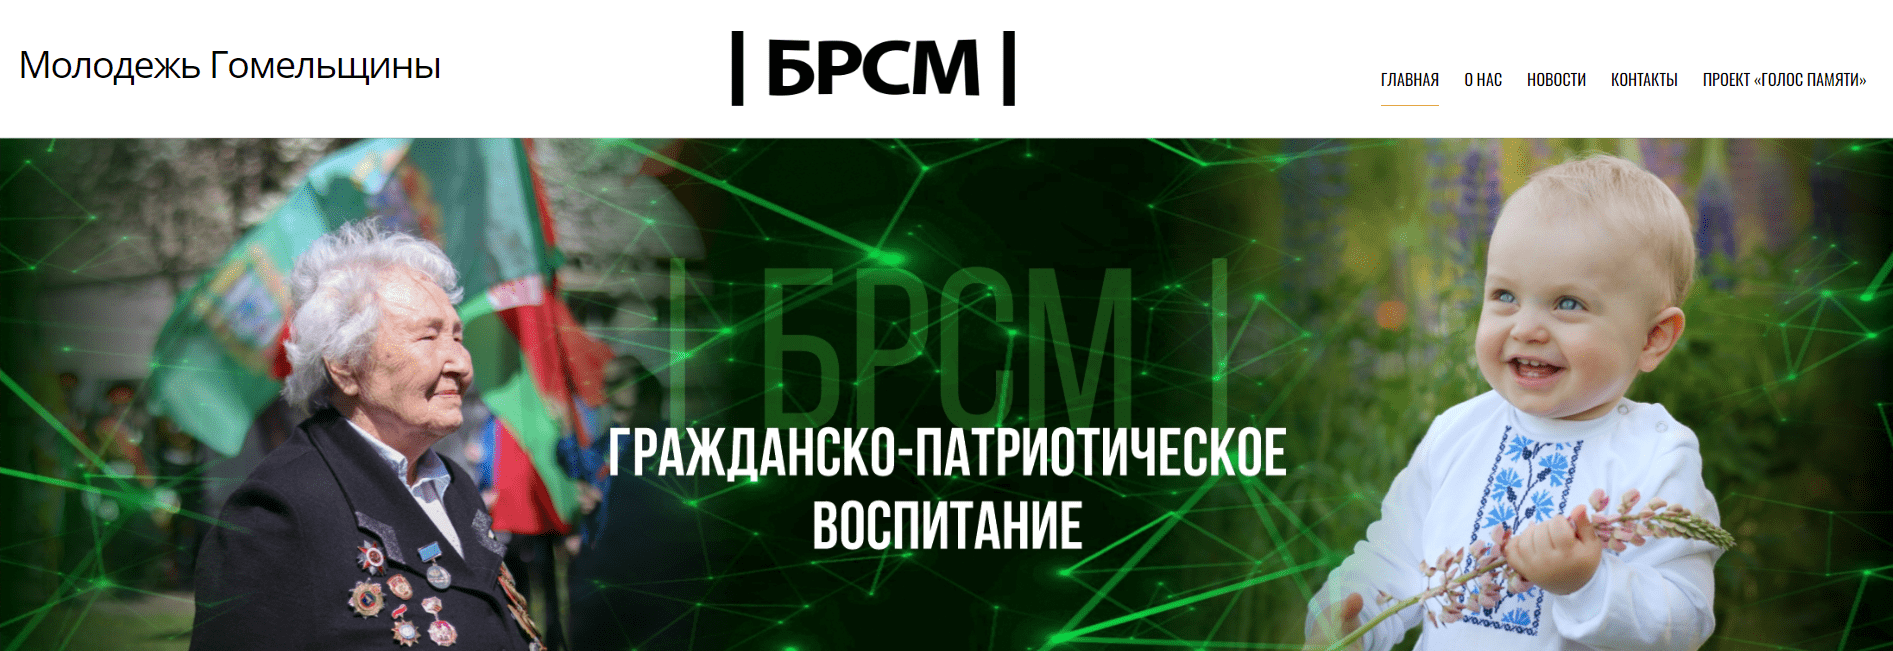 Белорусский республиканский союз молодежи (okbrsm.by) - официальный сайт